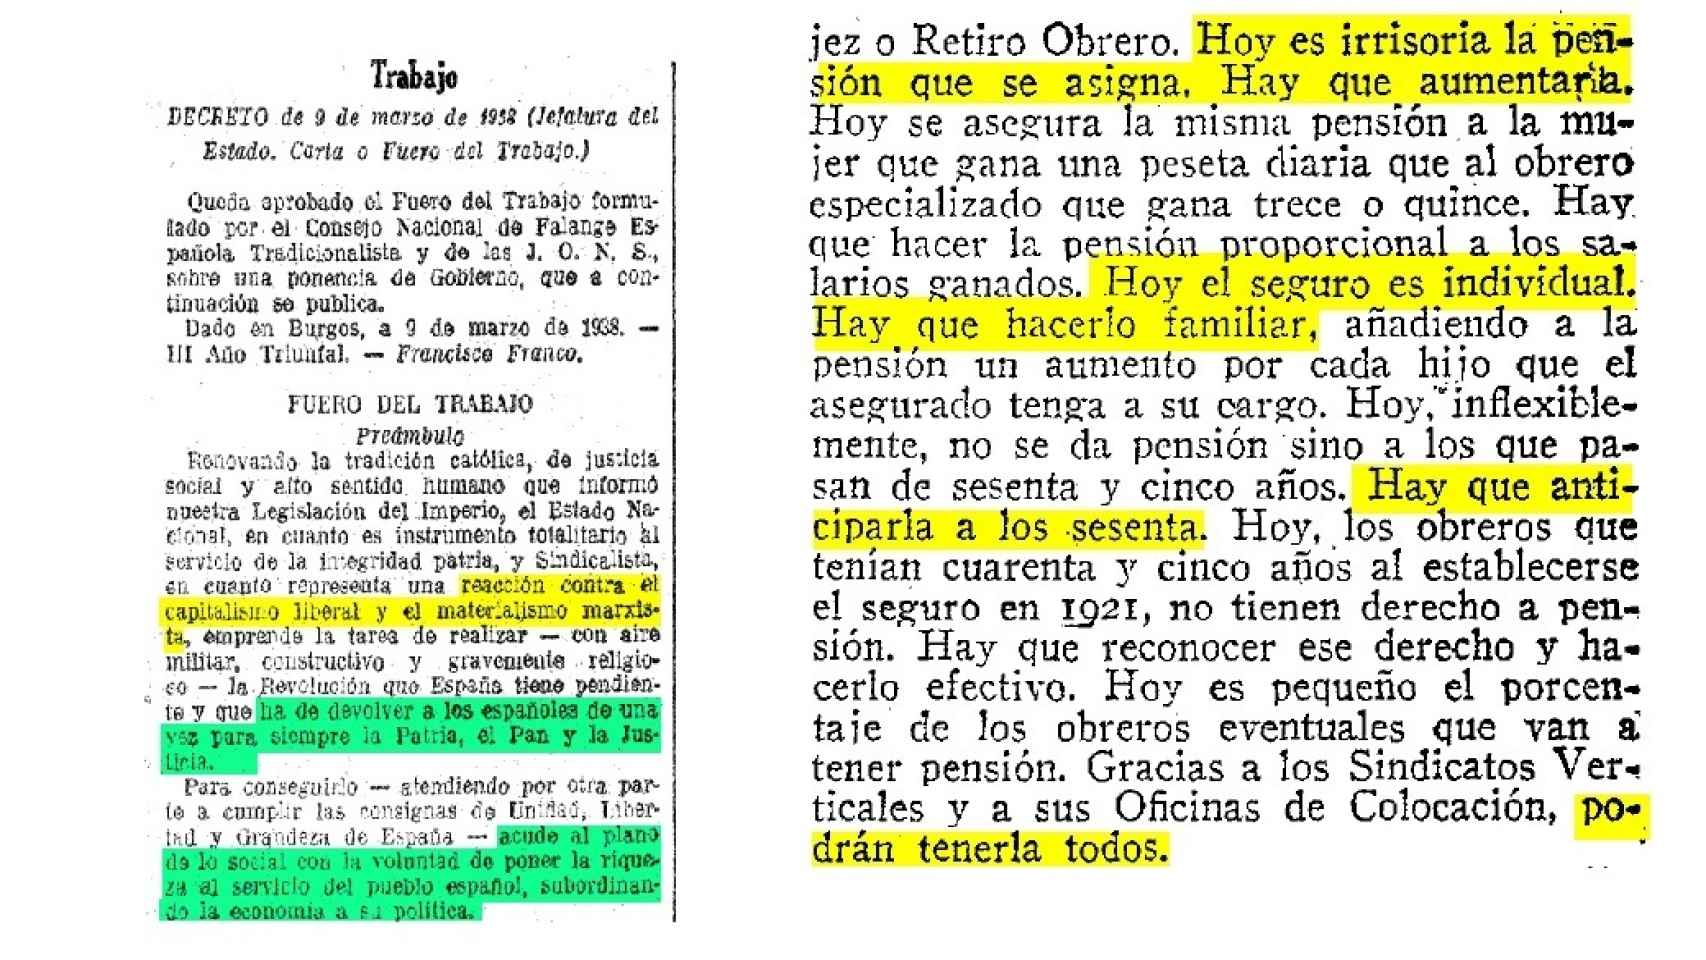 Extracto del Fuero de los españoles decretado por Francisco Franco el 9 de marzo de 1938.